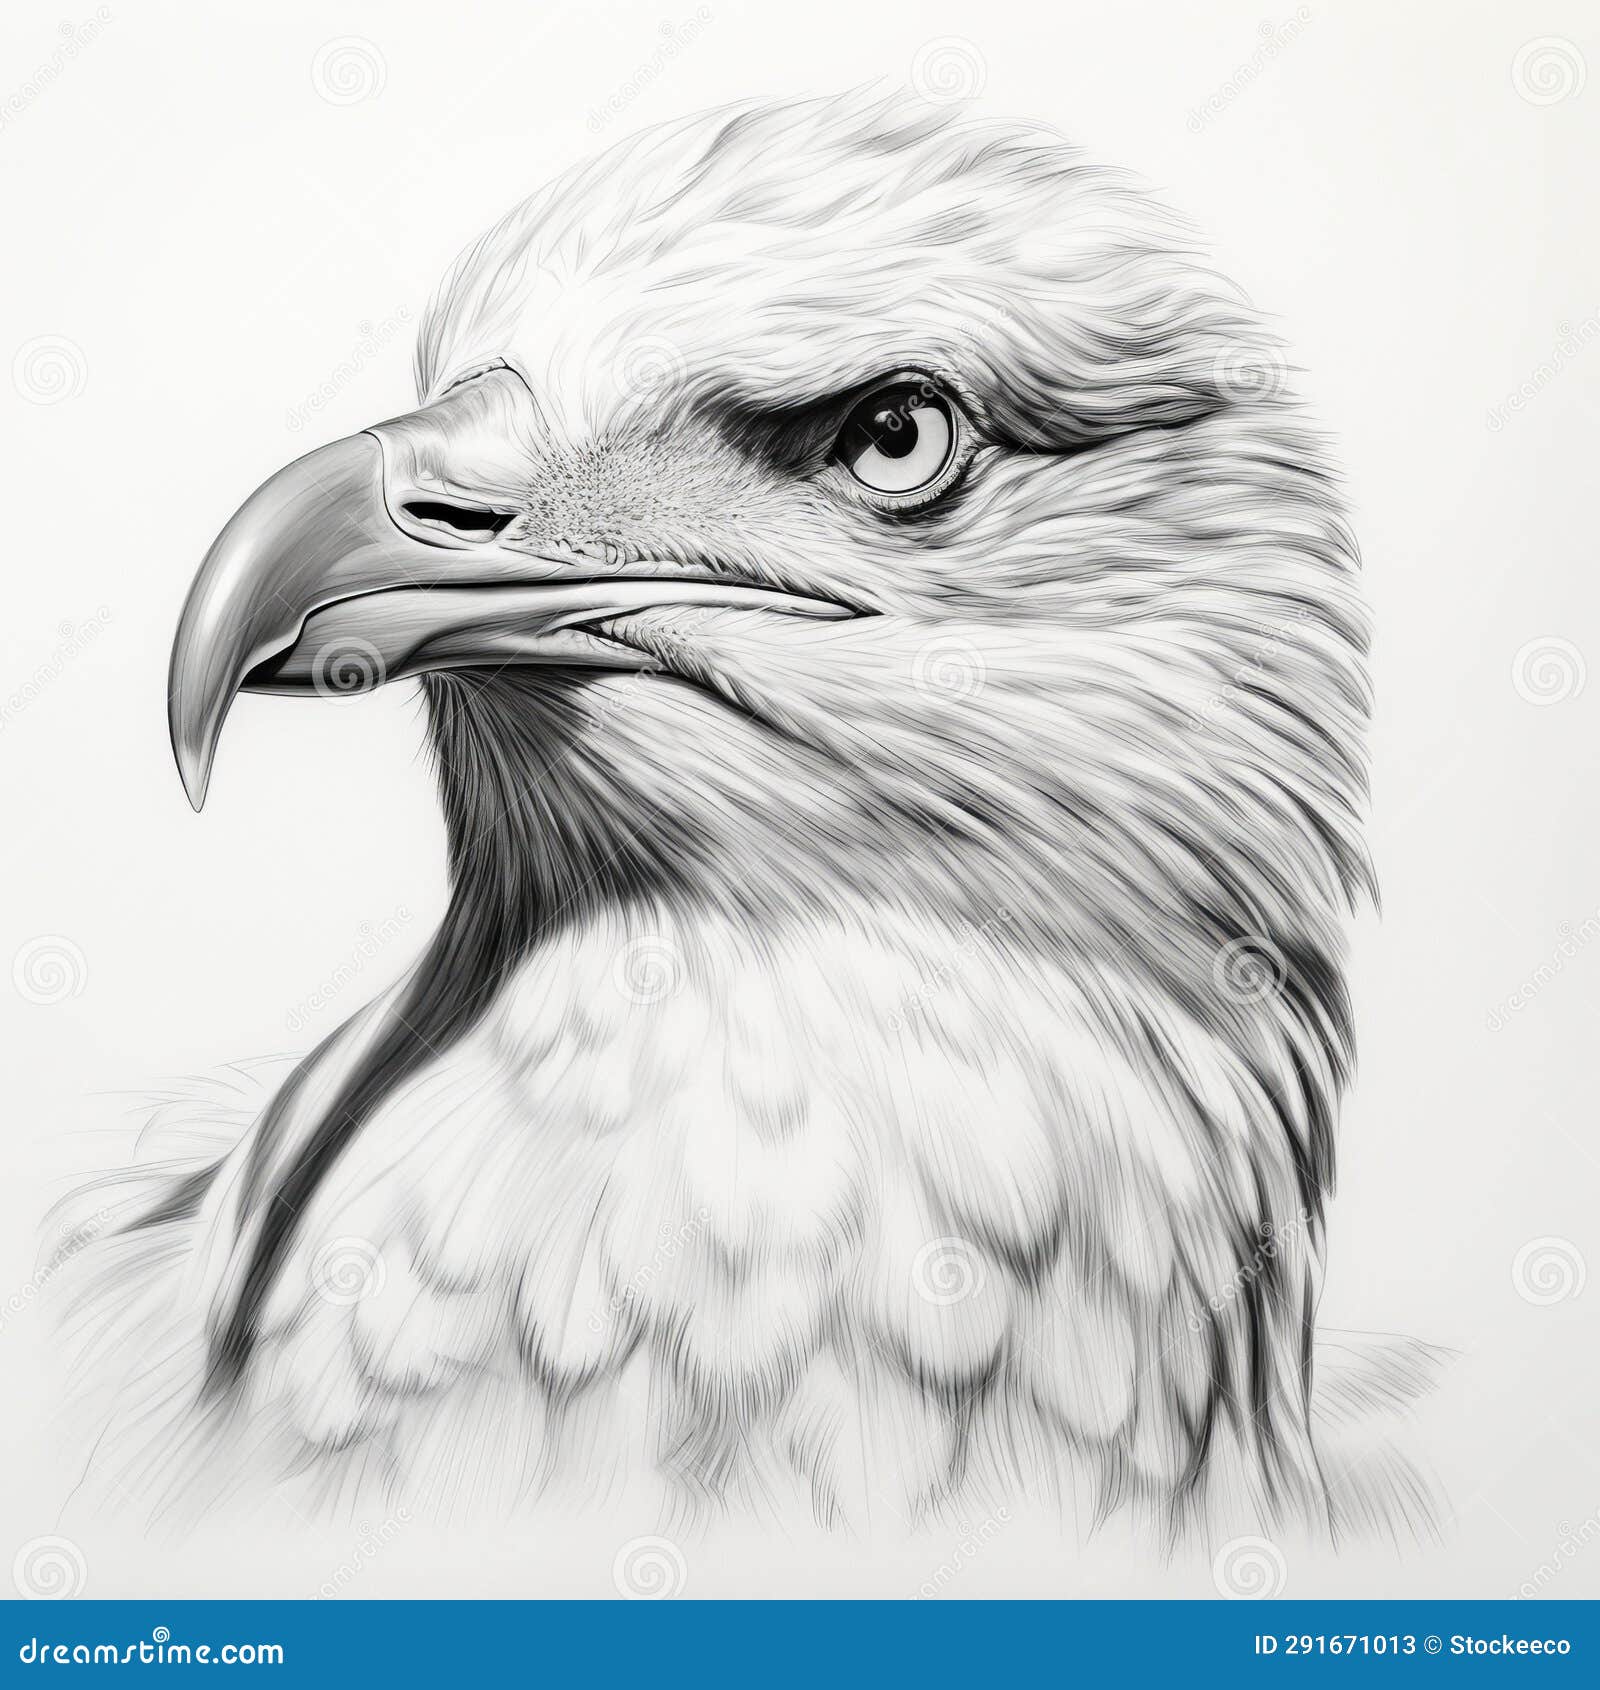 Top 152+ eagle pencil sketch